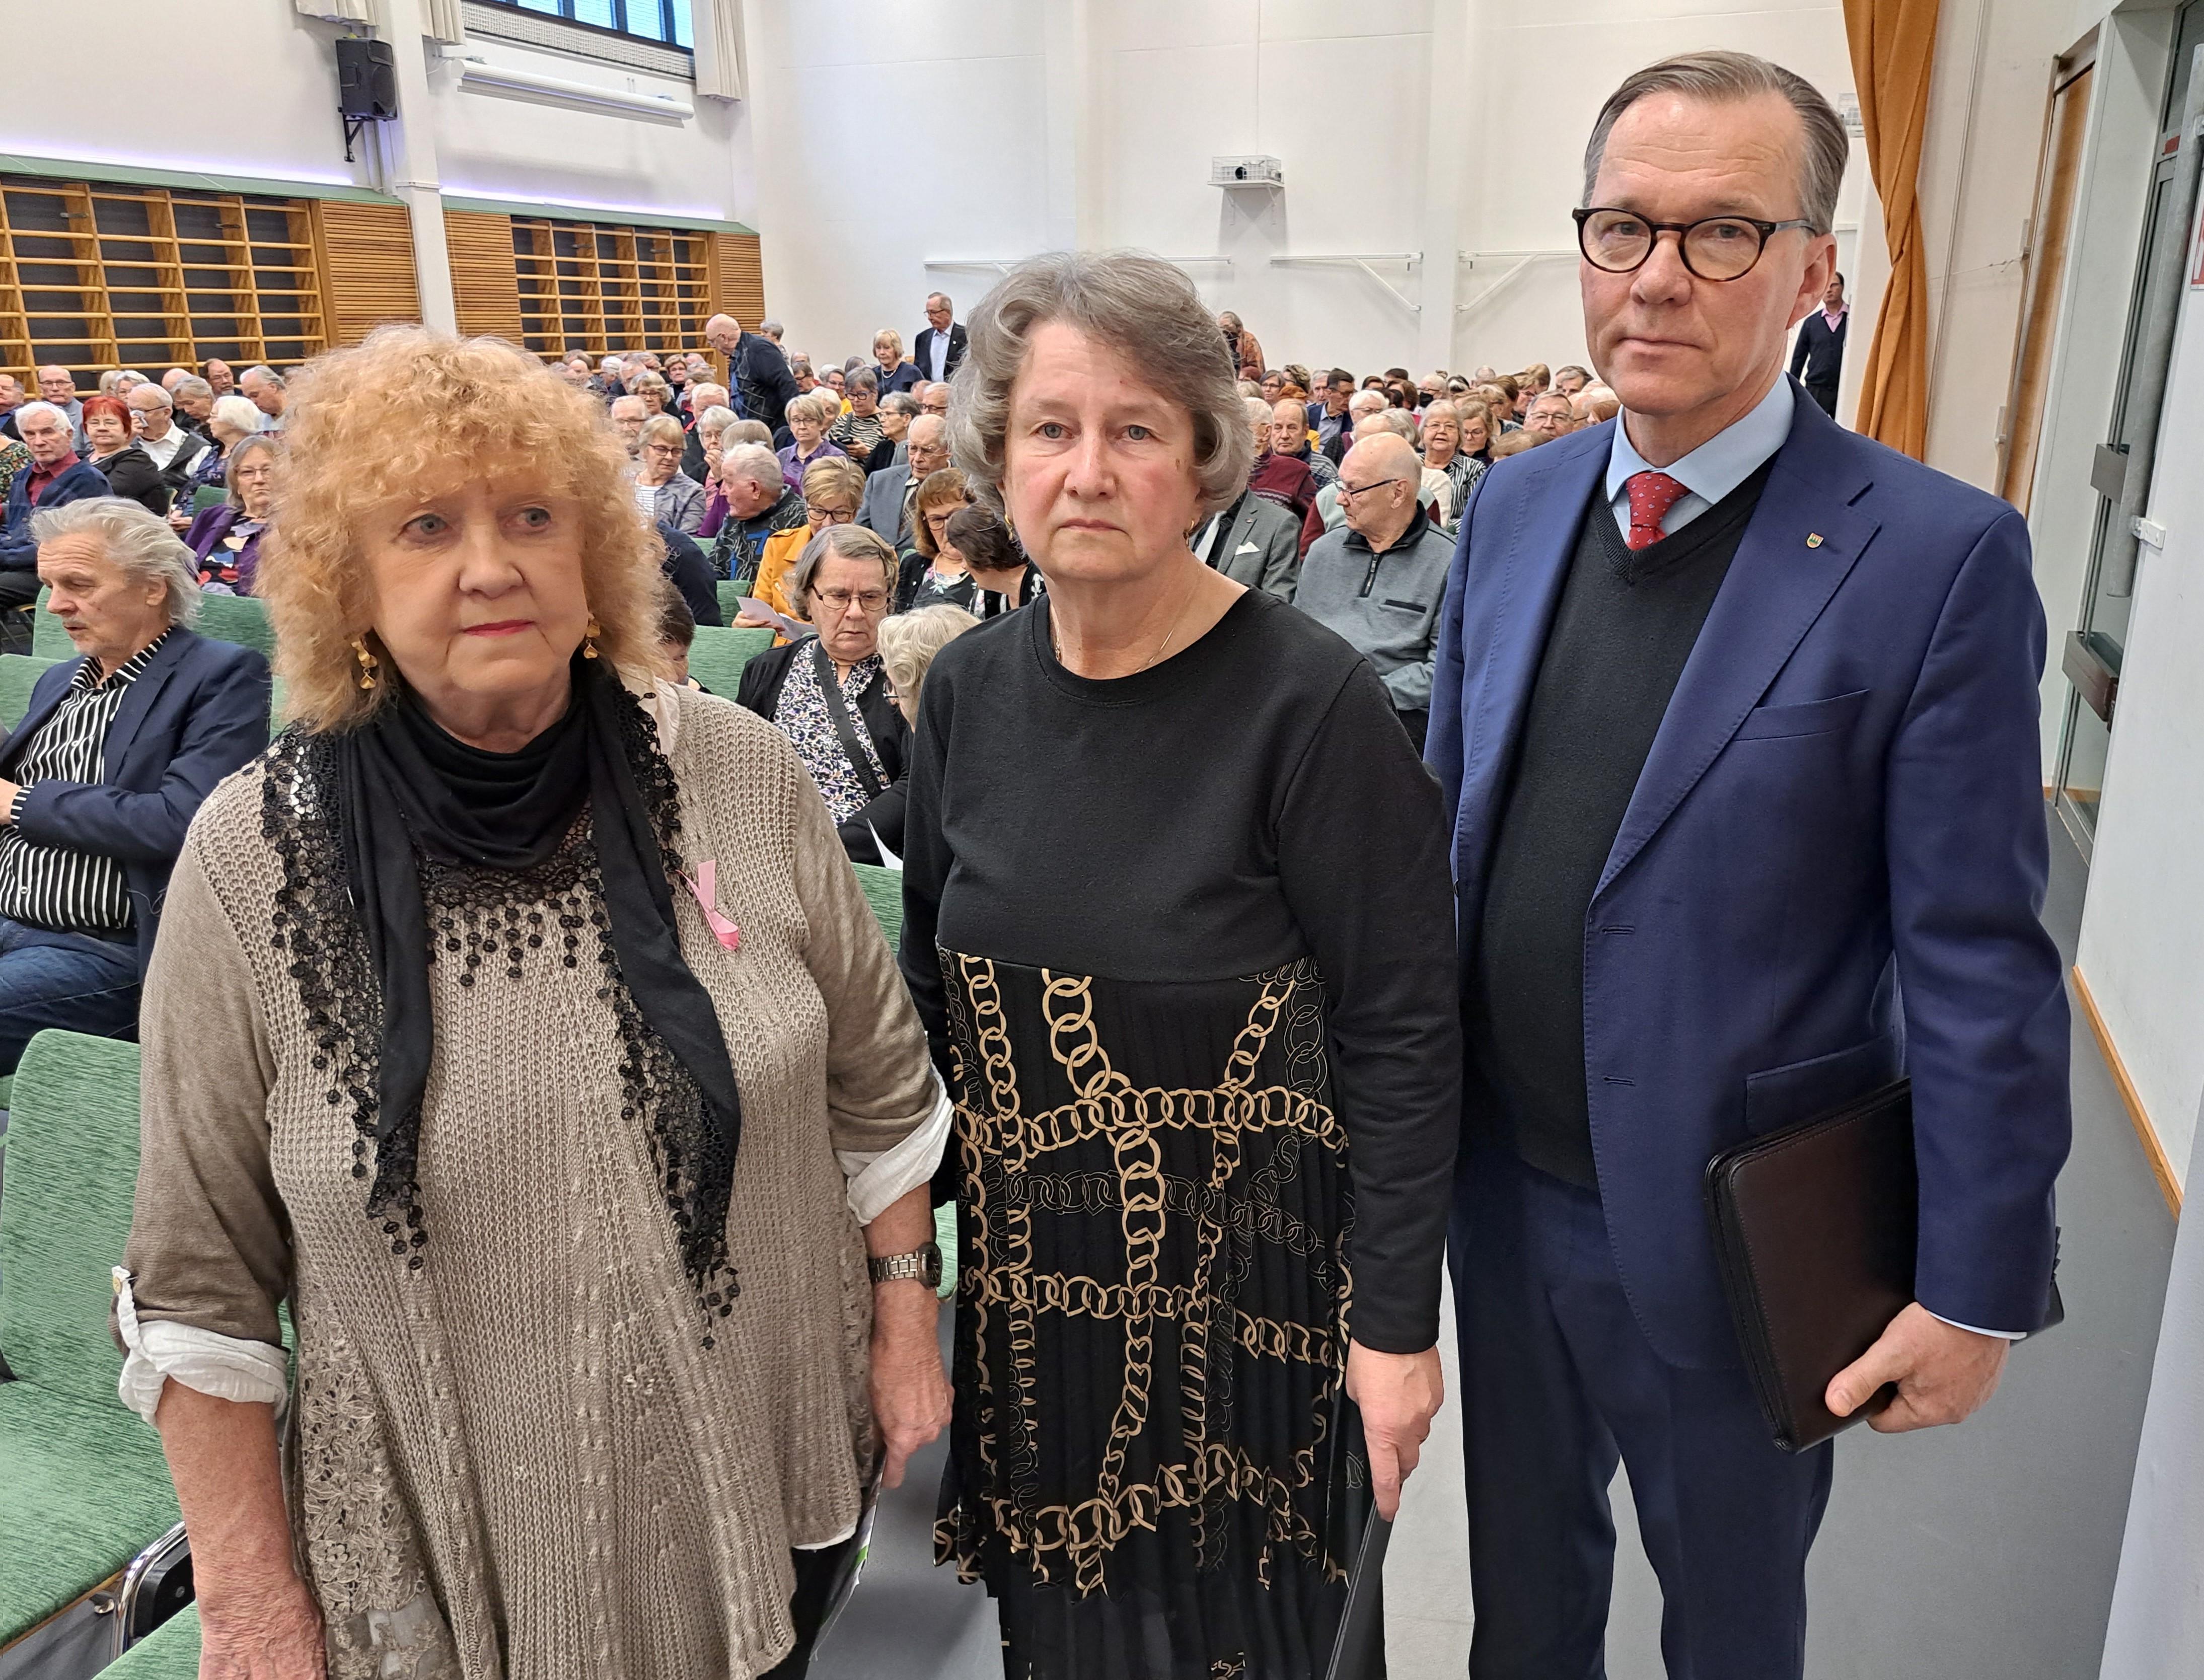 Piirin puheenjohtaja Eira Seppänen, Vaalan yhdistyksen puheenjohtaja Aune Sallila ja juhlapuhuja Timo Korhonen